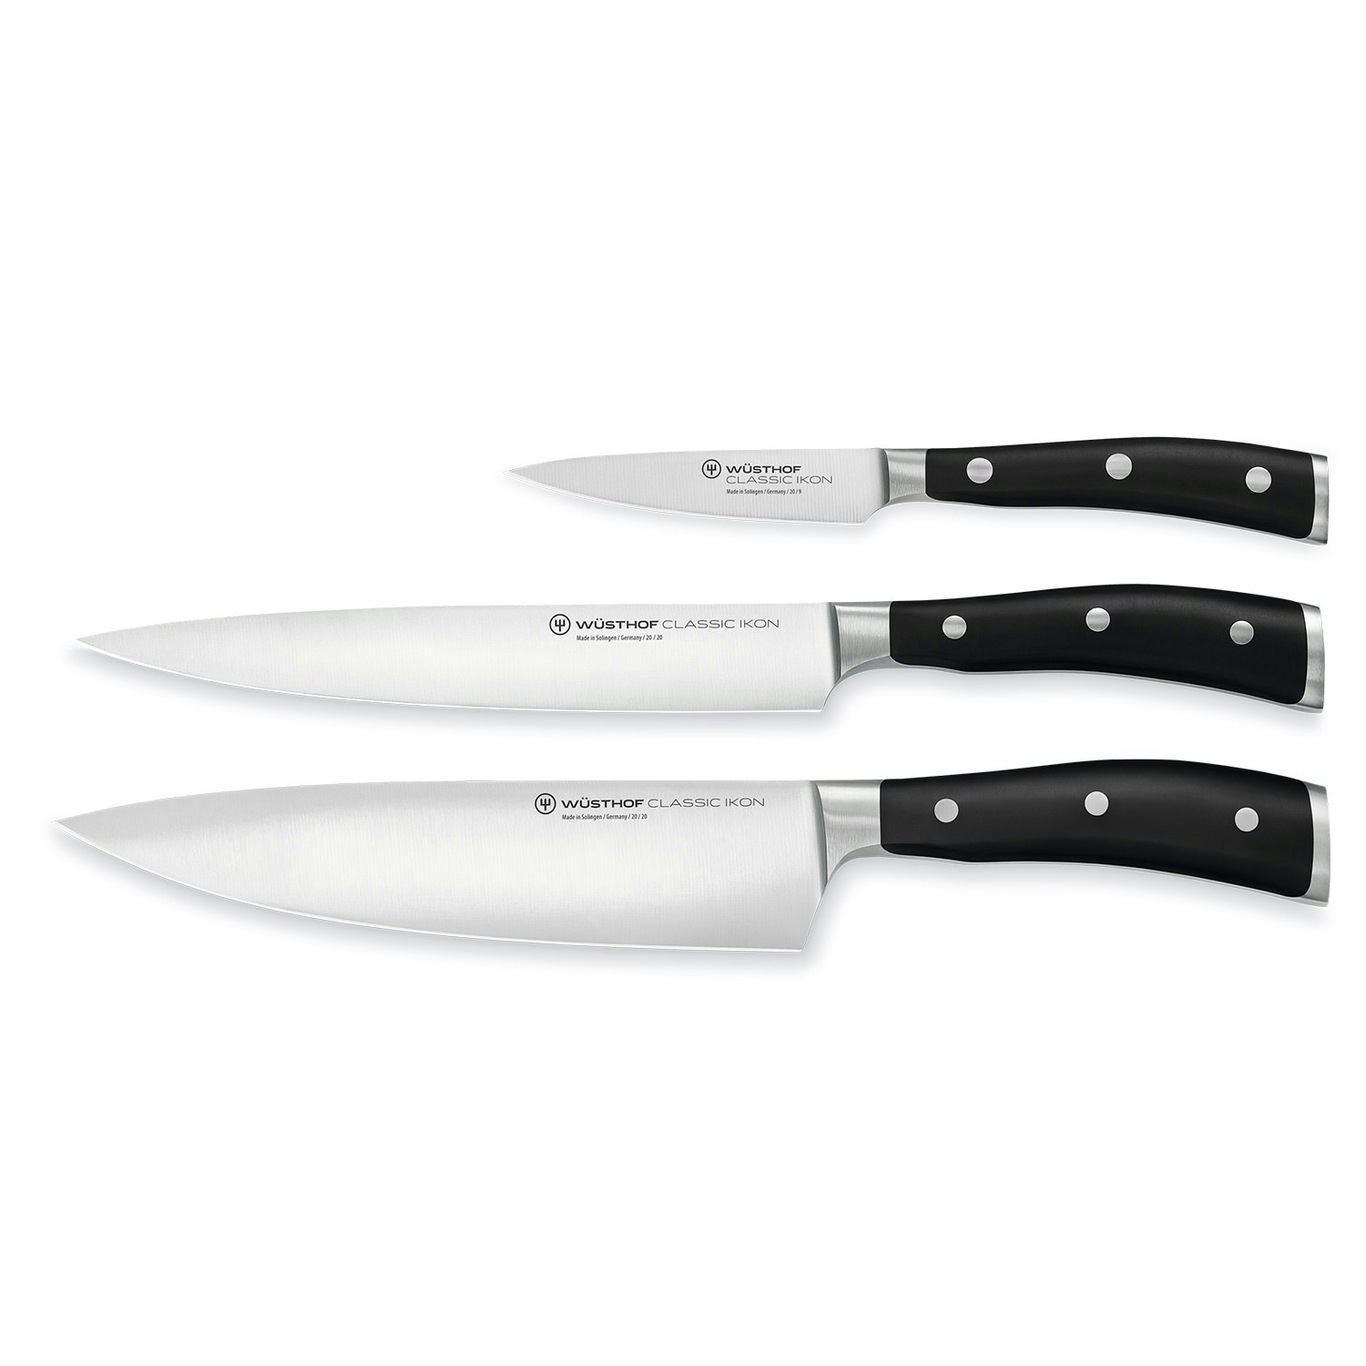 https://royaldesign.com/image/2/wusthof-classic-ikon-knife-set-3-pack-0?w=800&quality=80